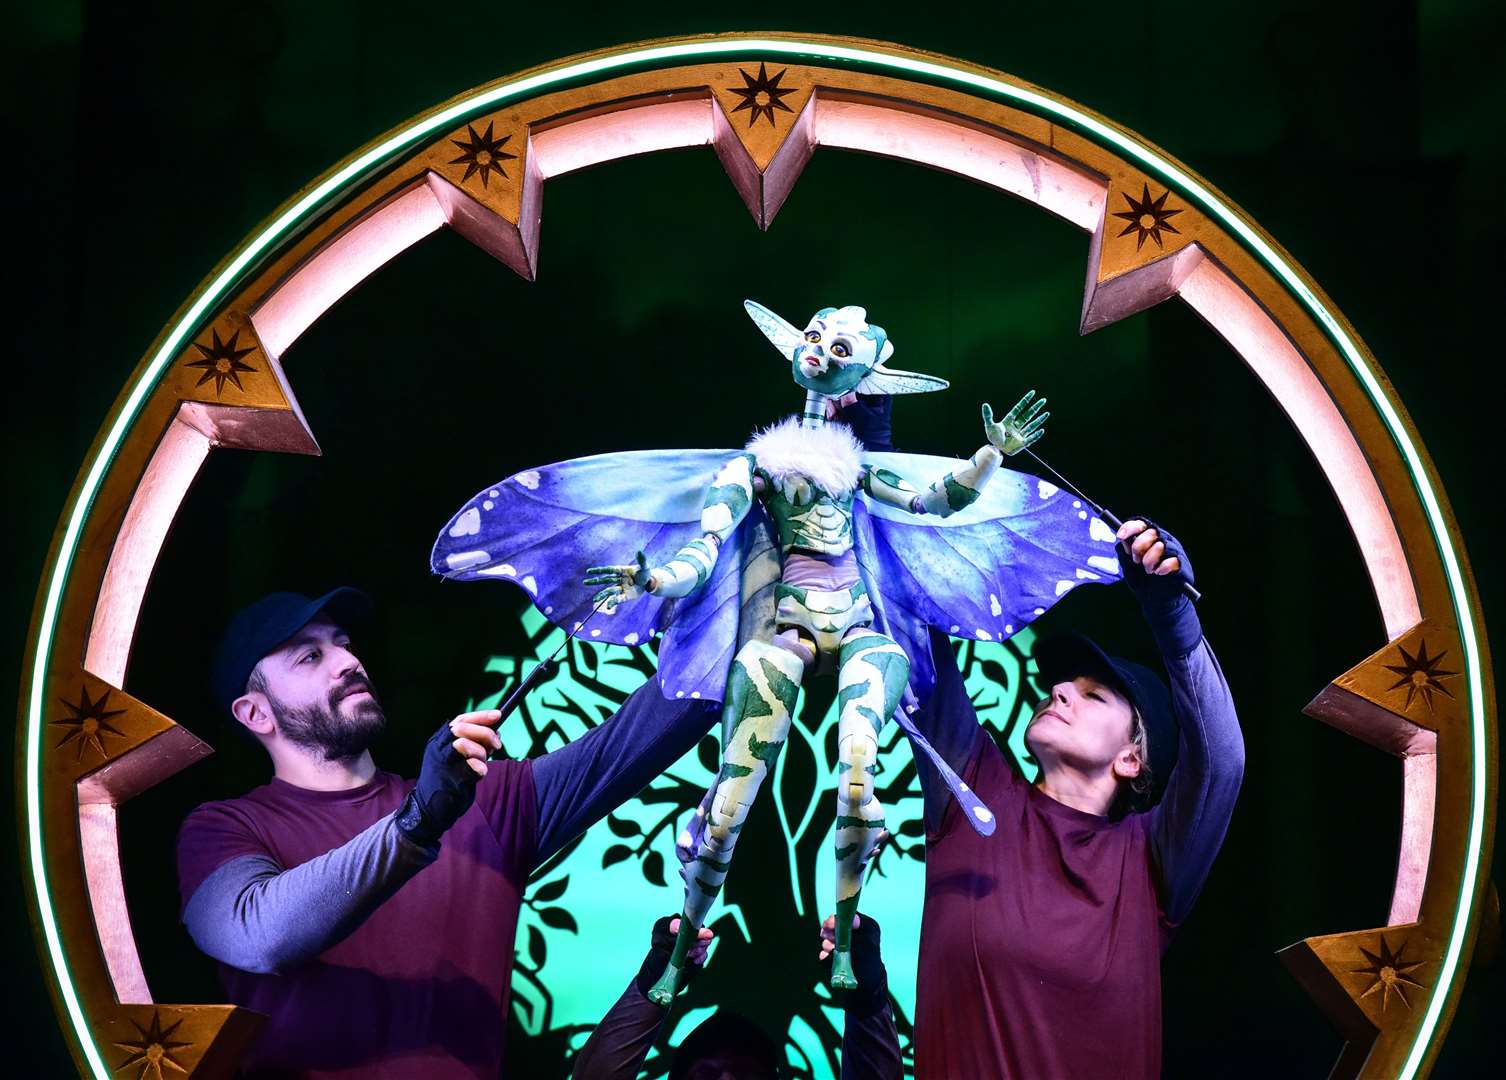 Le spectacle présente des fées, des trolls, des dragons et des licornes, tous interprétés à l'aide de marionnettes.  Photo : fournie par le théâtre Marlowe